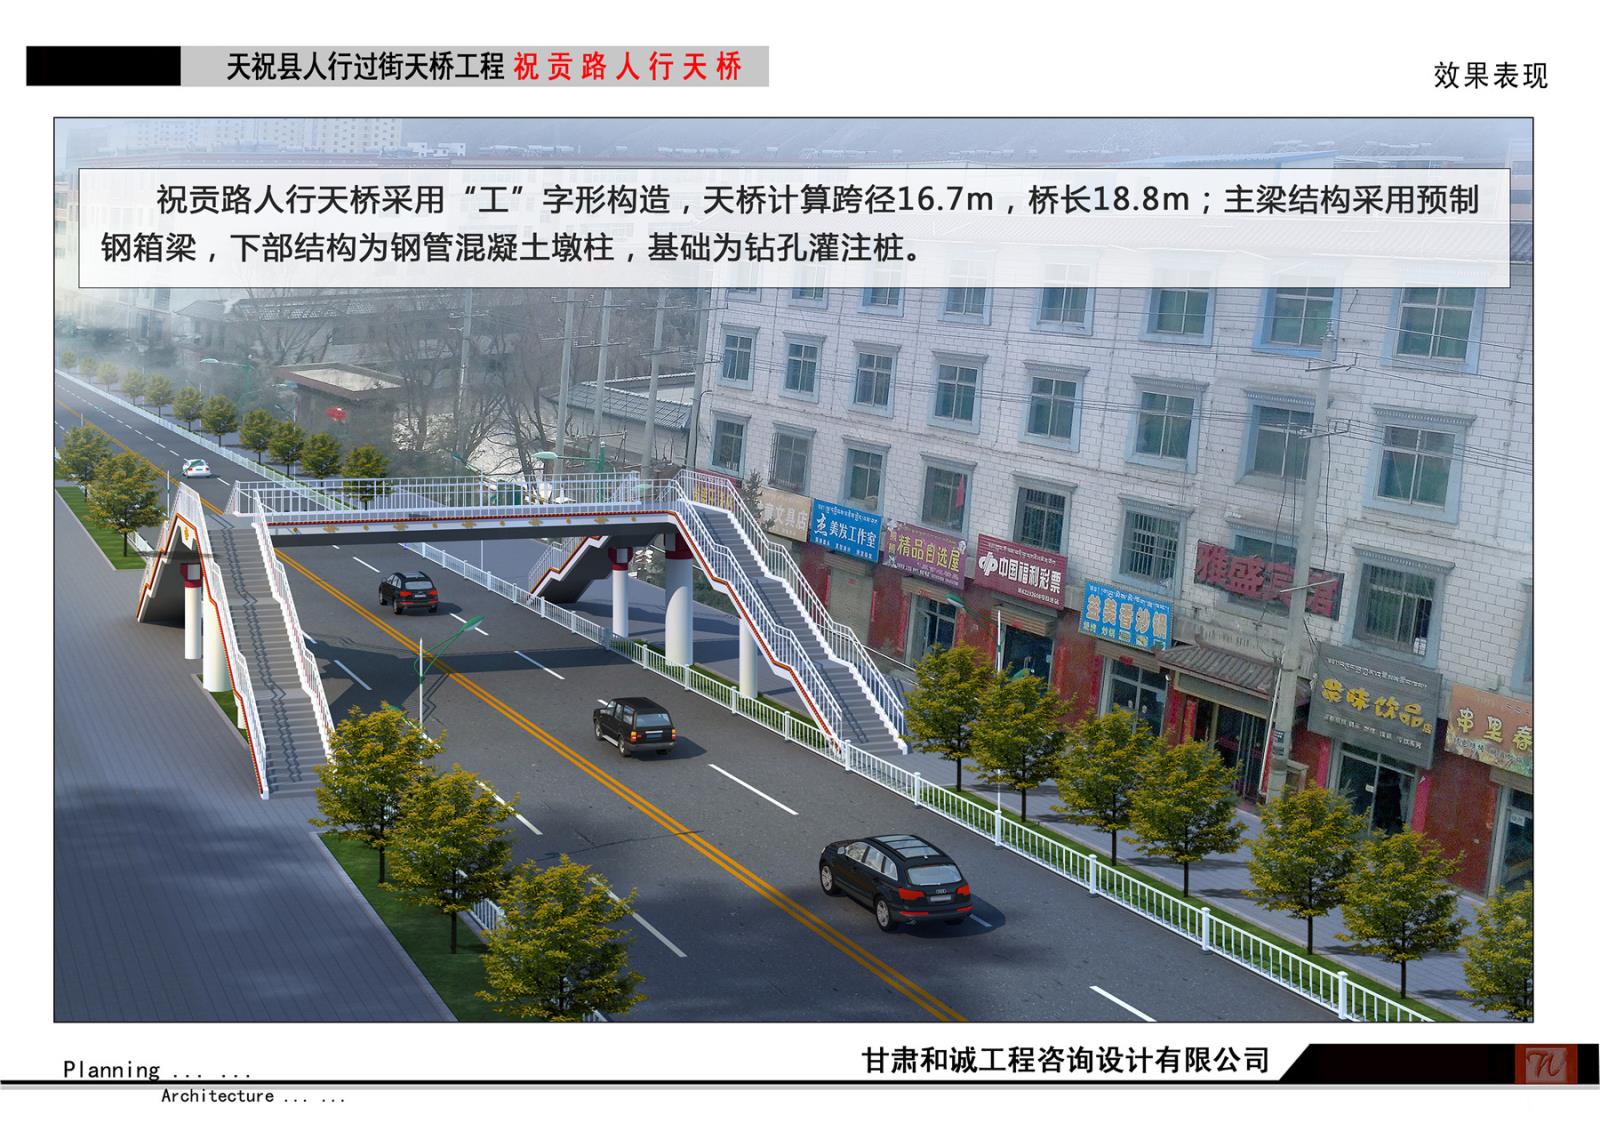 天祝县建成桥梁与周边路网连接道路工程